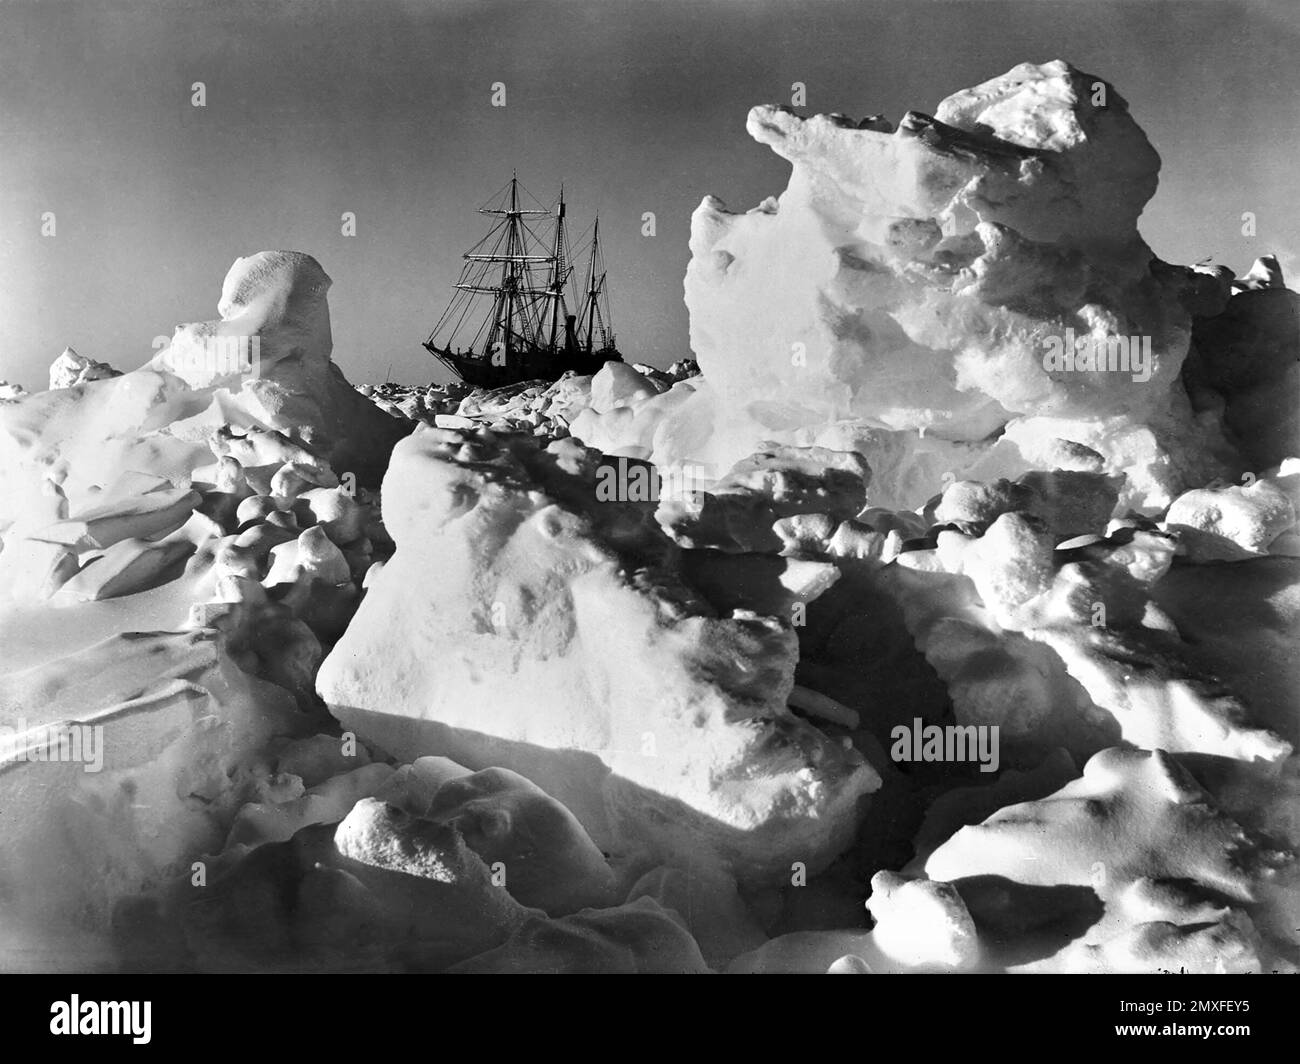 Ernest Shackleton, Ausdauer. Sir Ernest Shackletons Schiff Endurance, gefangen im Eis während der Imperialen Trans-Antarktis Expedition 1914/15. Foto: Frank Hurley, 1915 Stockfoto